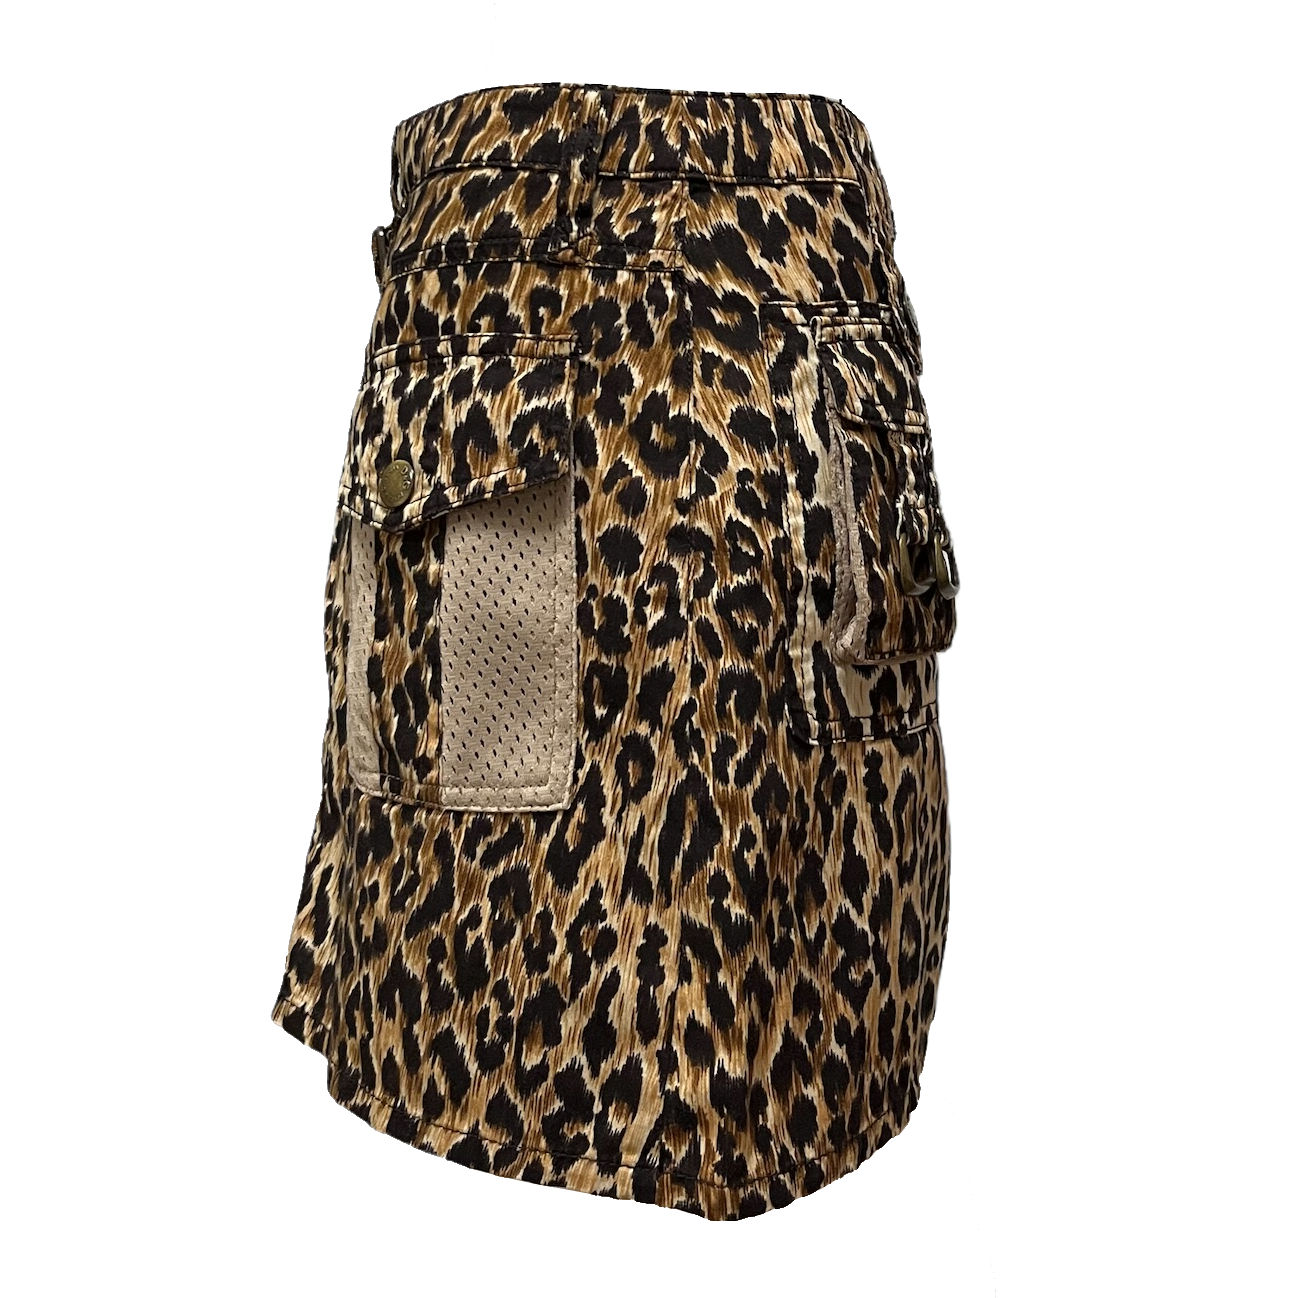 D&G Leopard Print Mini Skirt